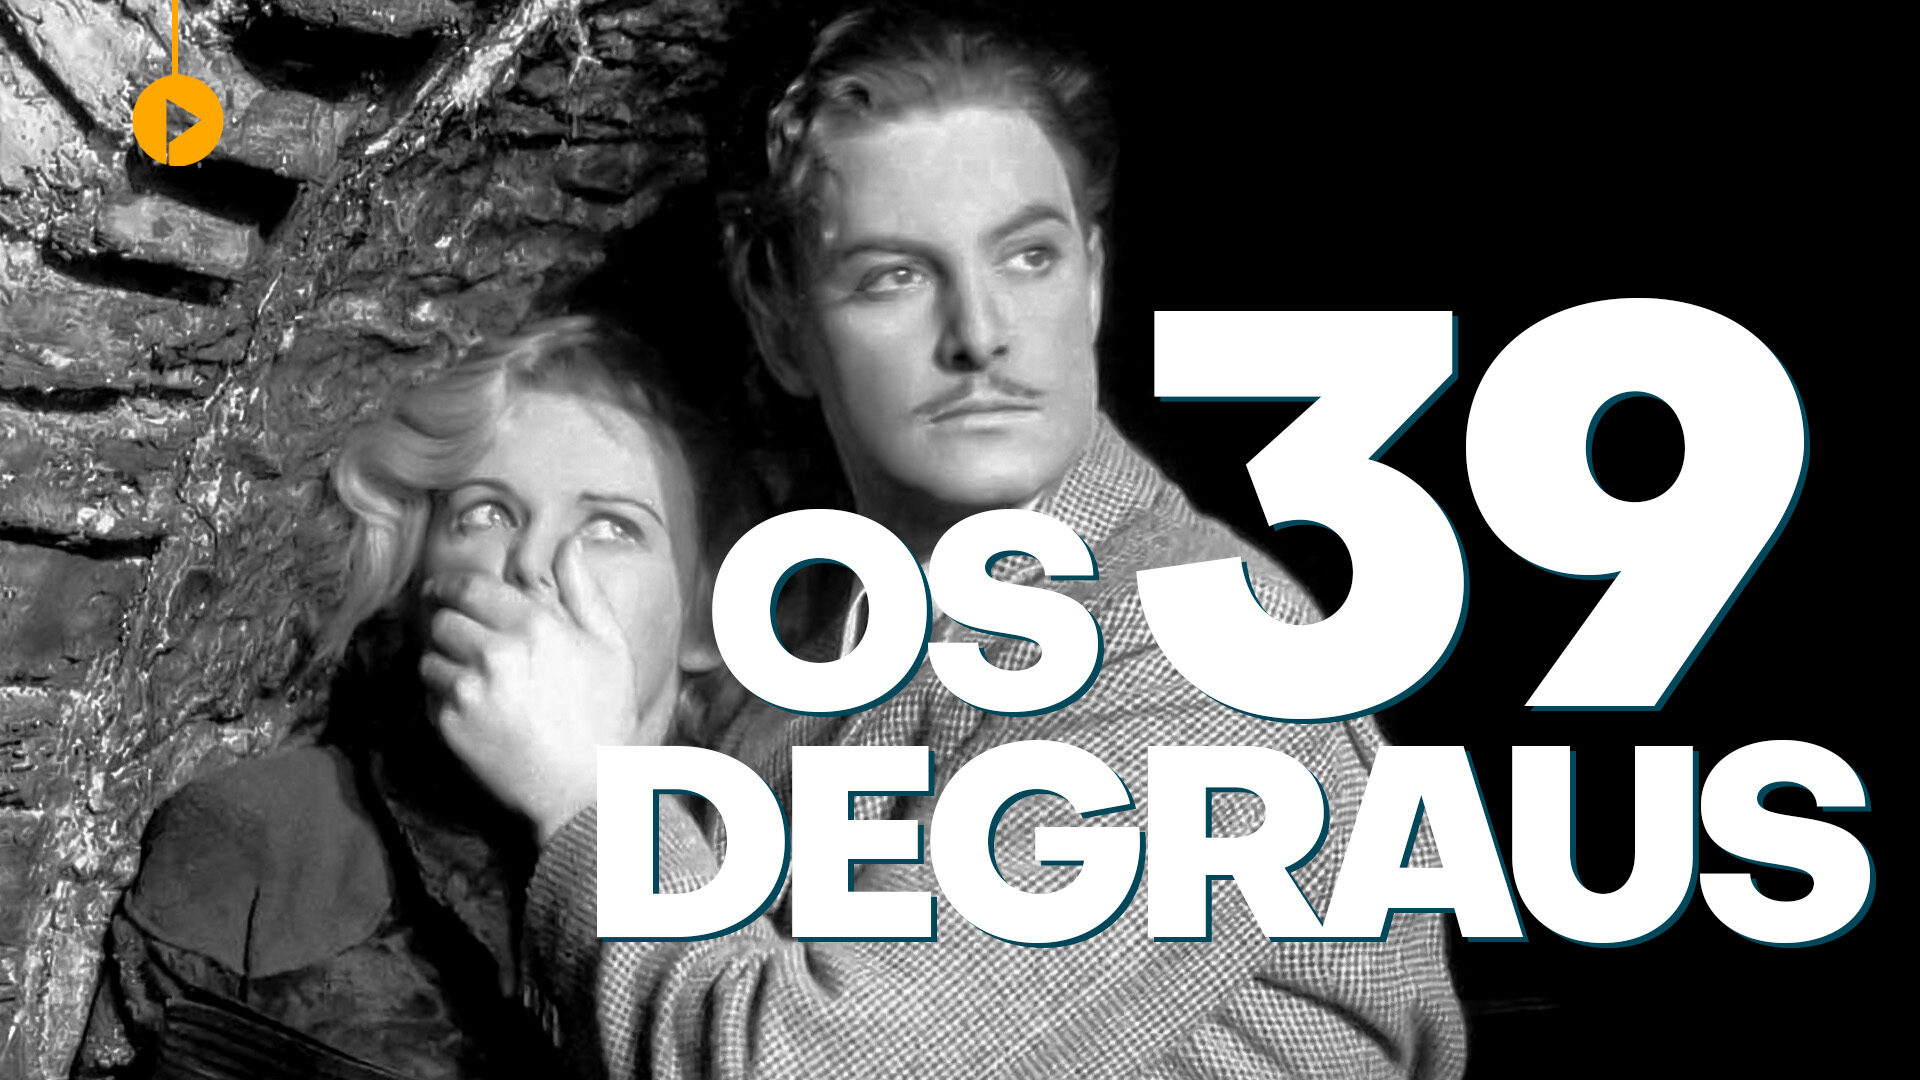 Os 39 Degraus